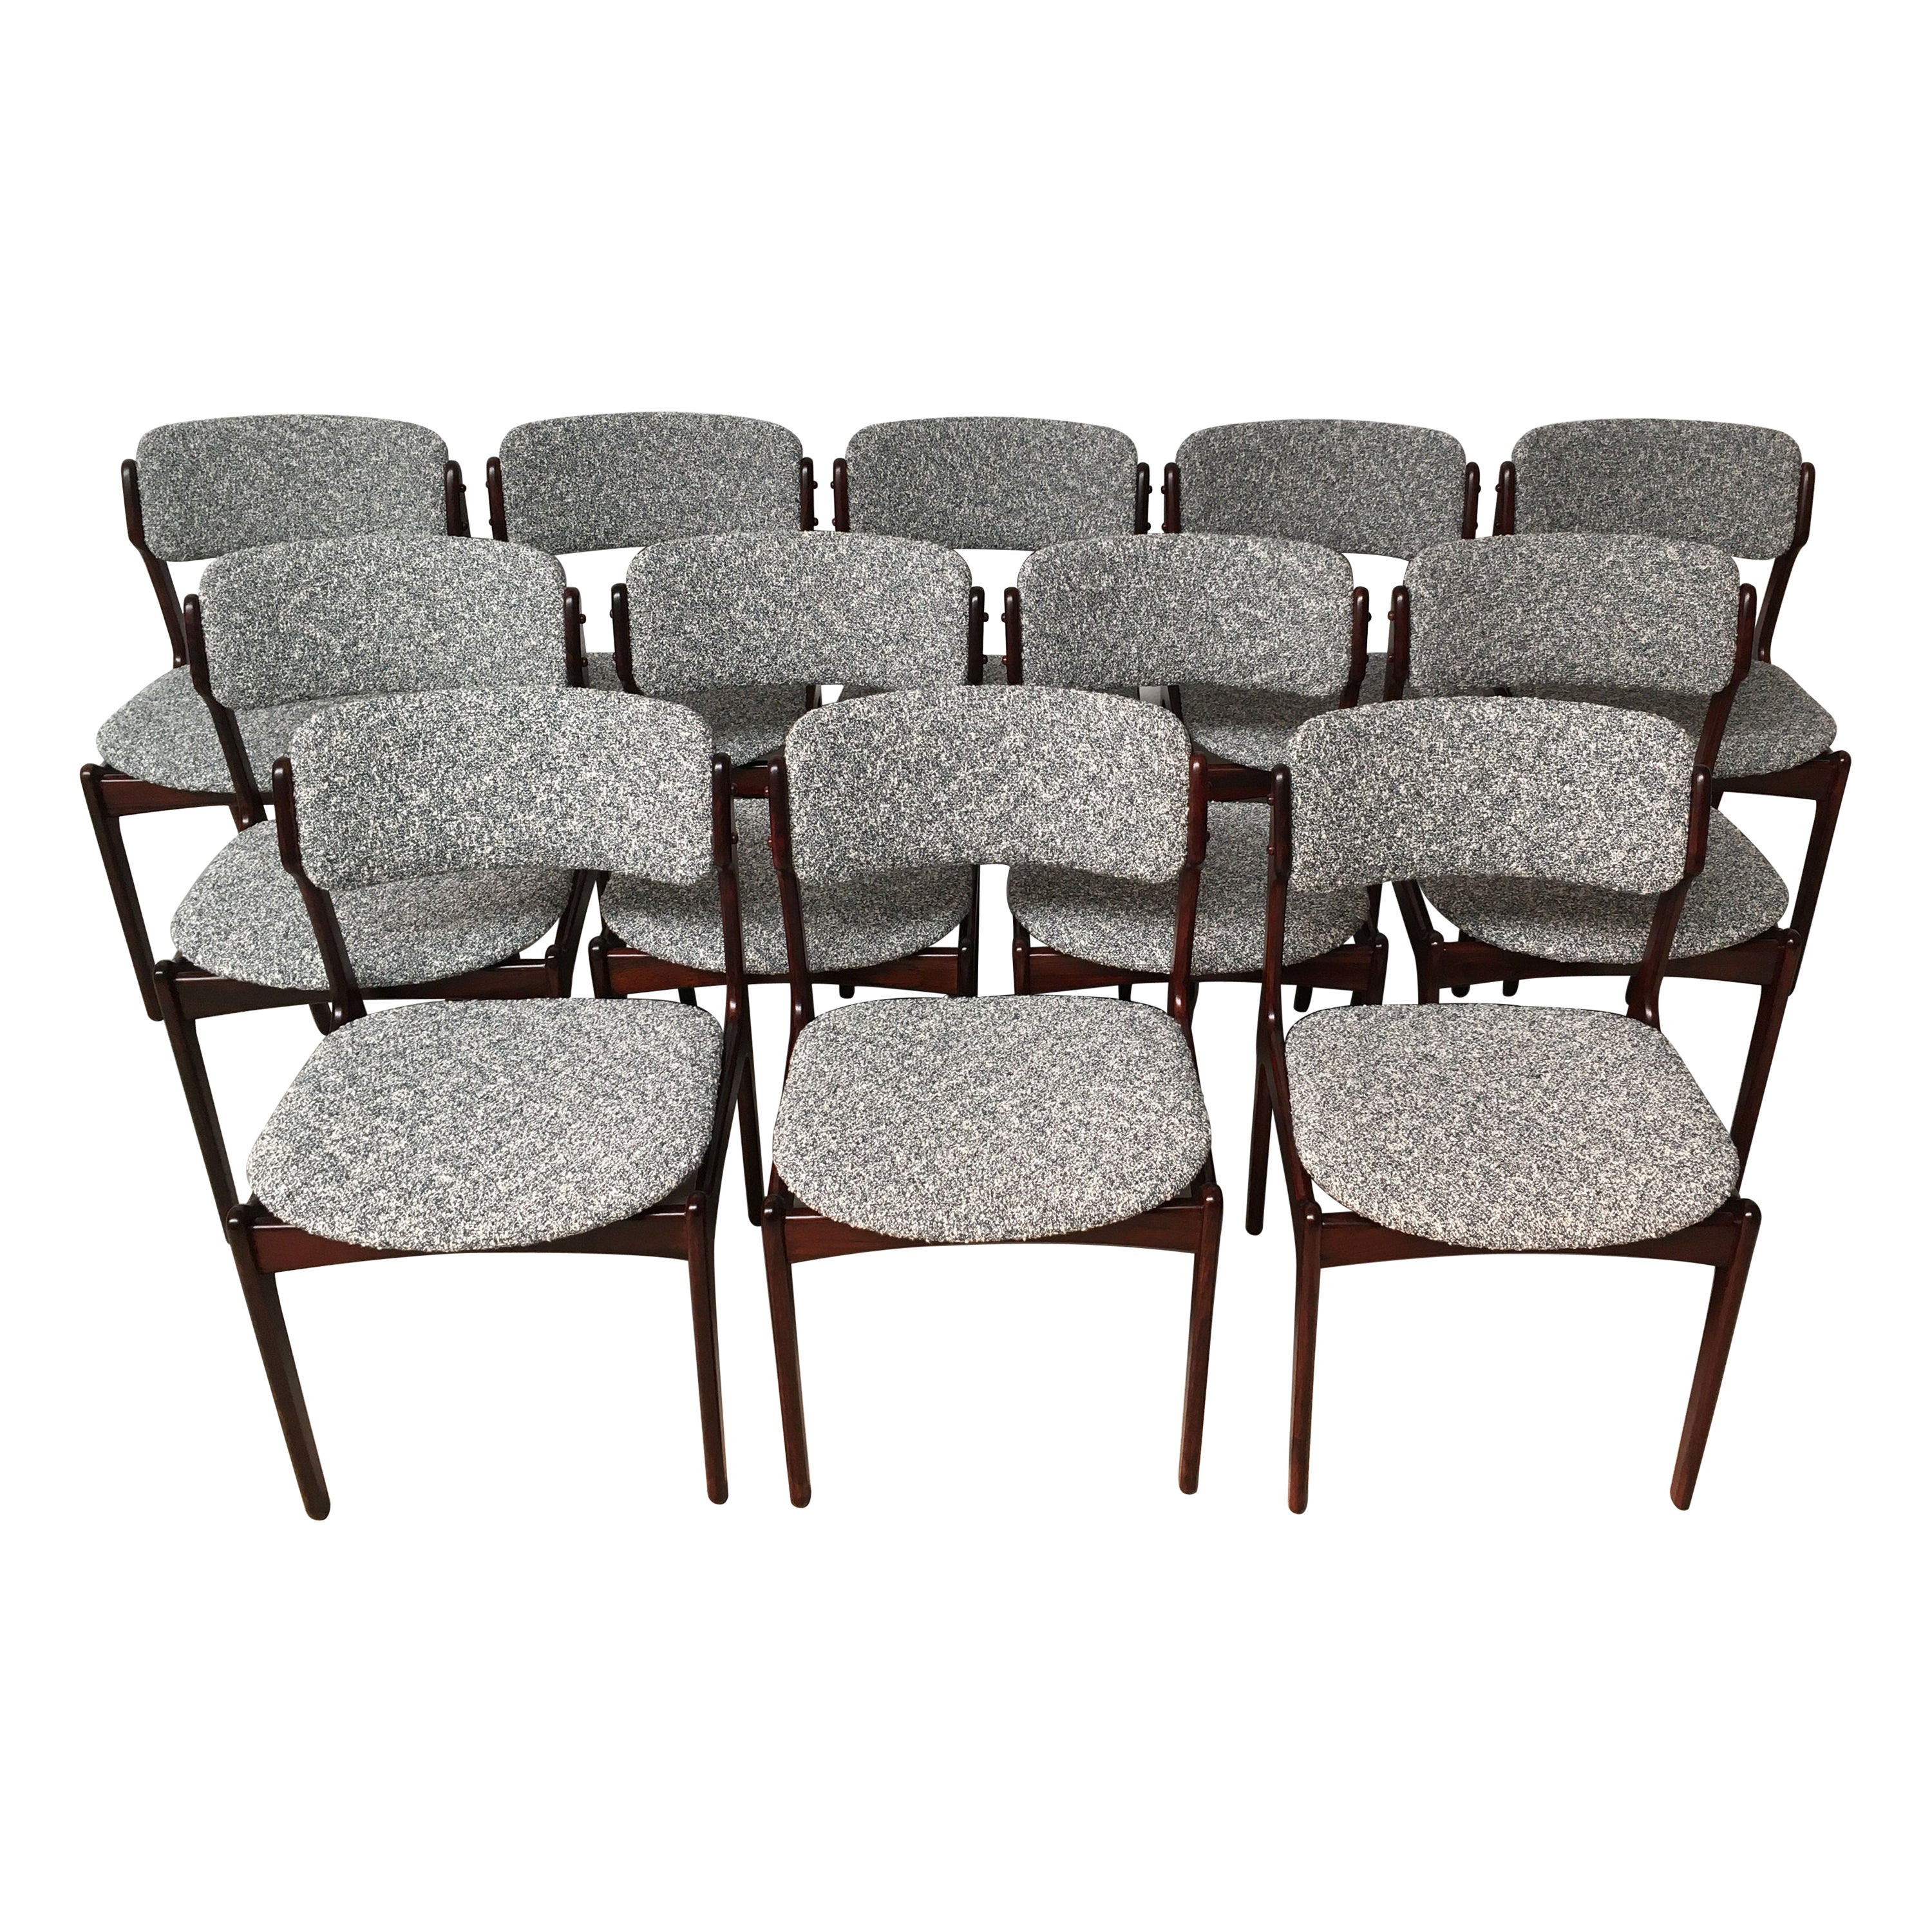 Erik Buch - Ensemble de douze chaises de salle à manger en bois de rose restaurées, tapissées sur mesure en vente